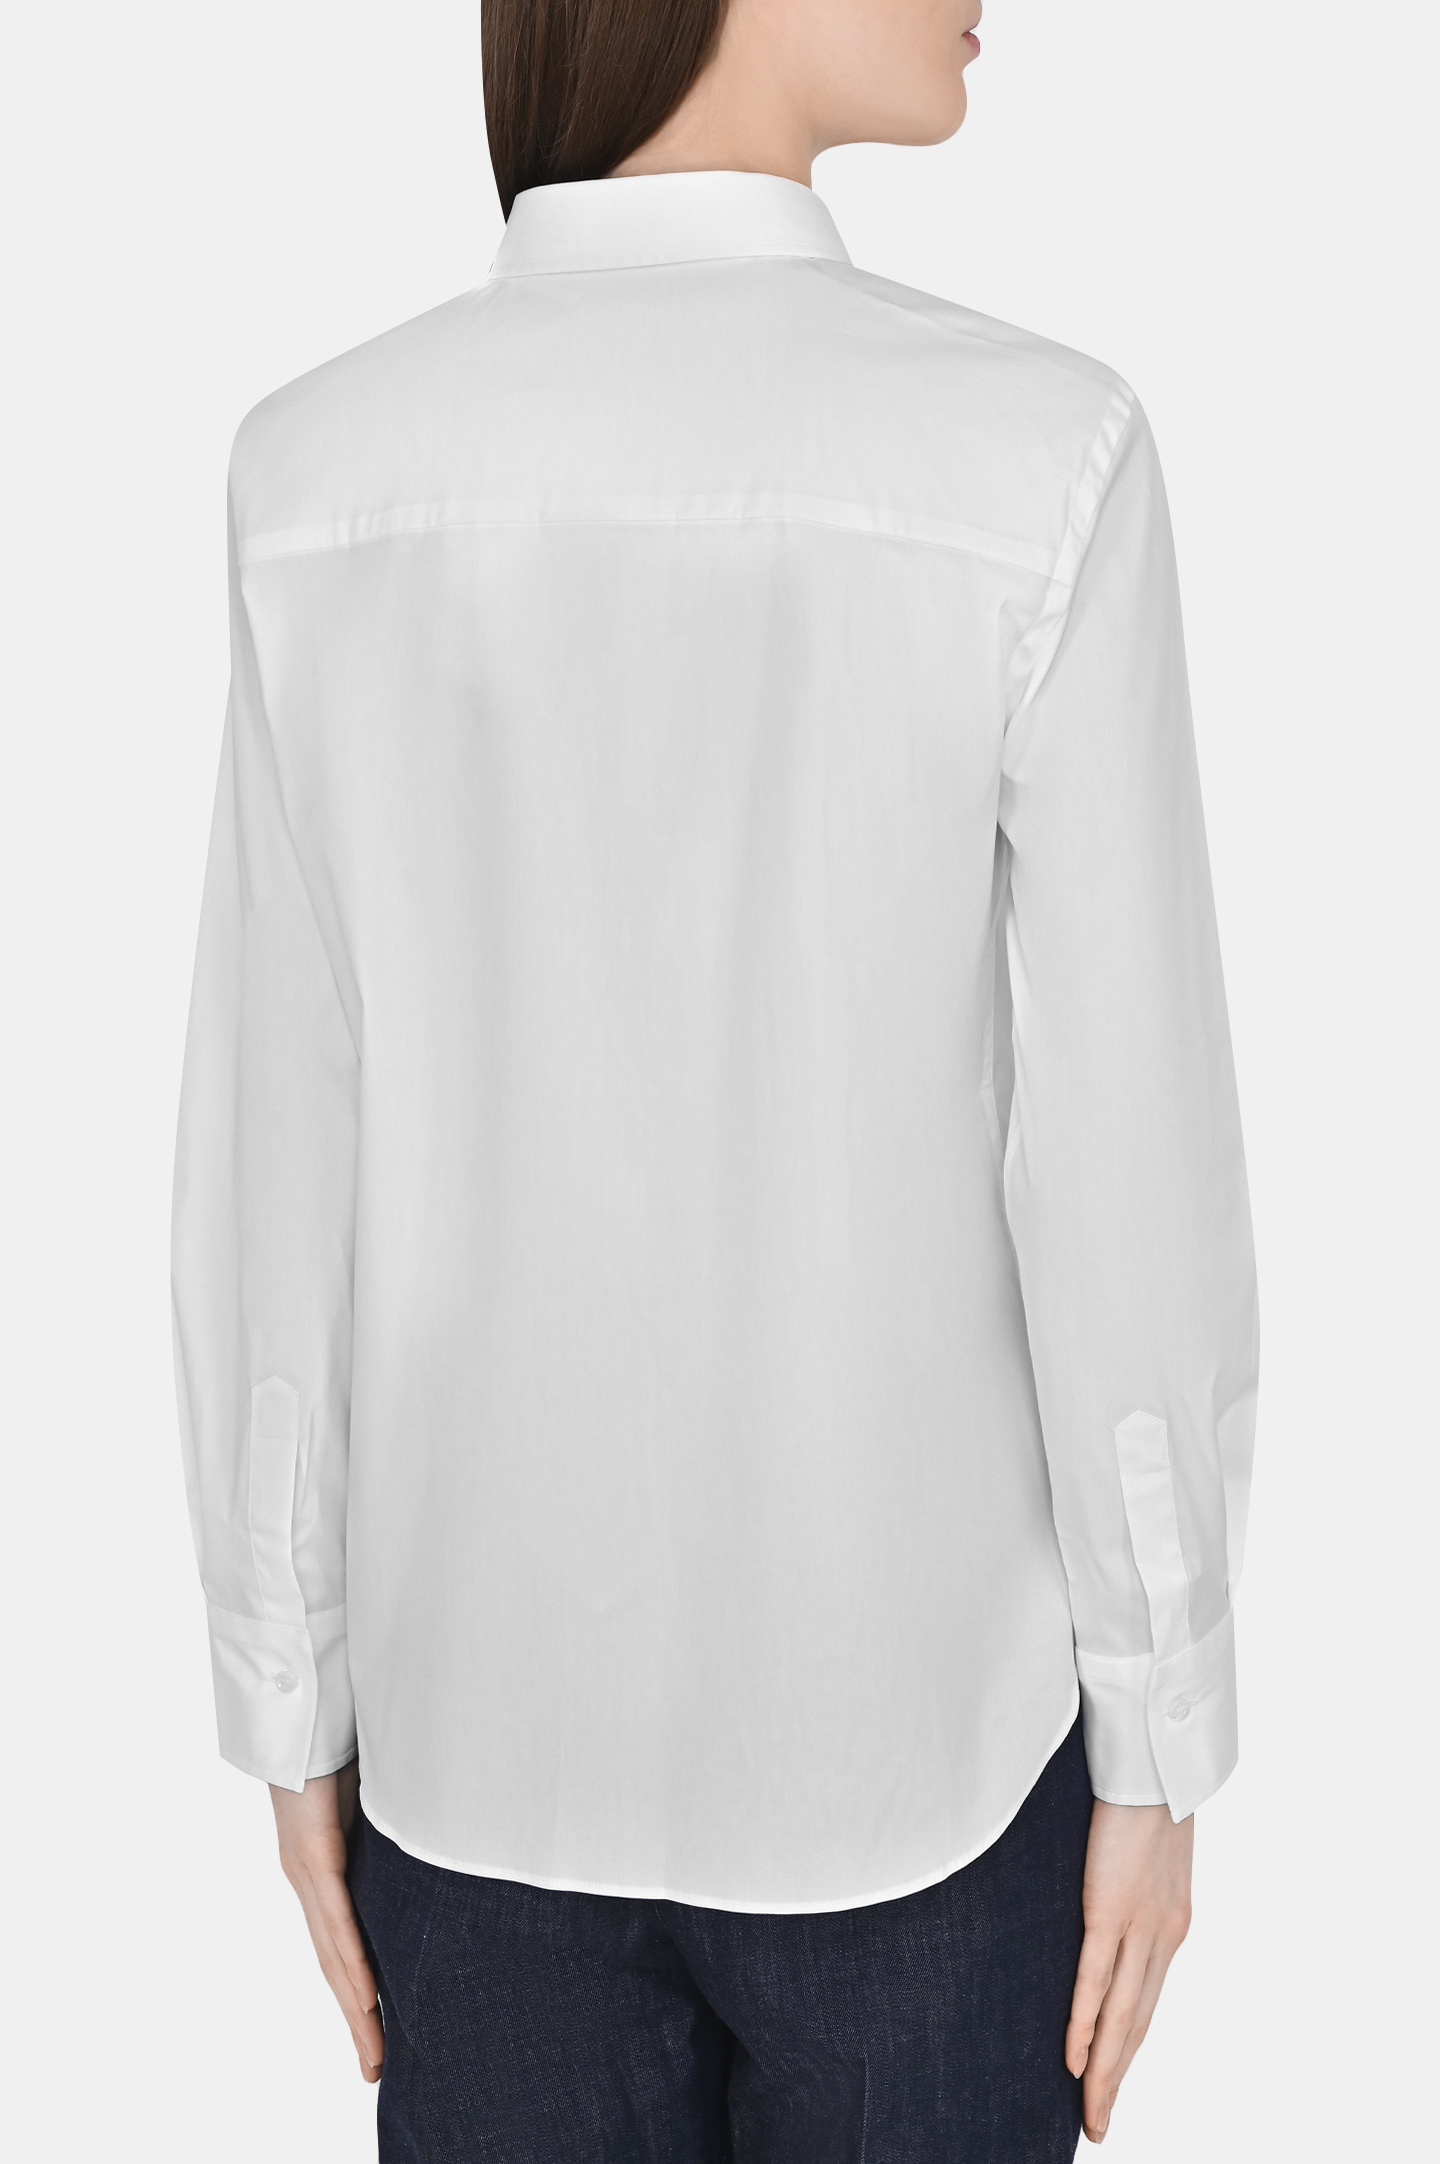 Рубашка BRUNELLO  CUCINELLI M0091MA206, цвет: Белый, Женский